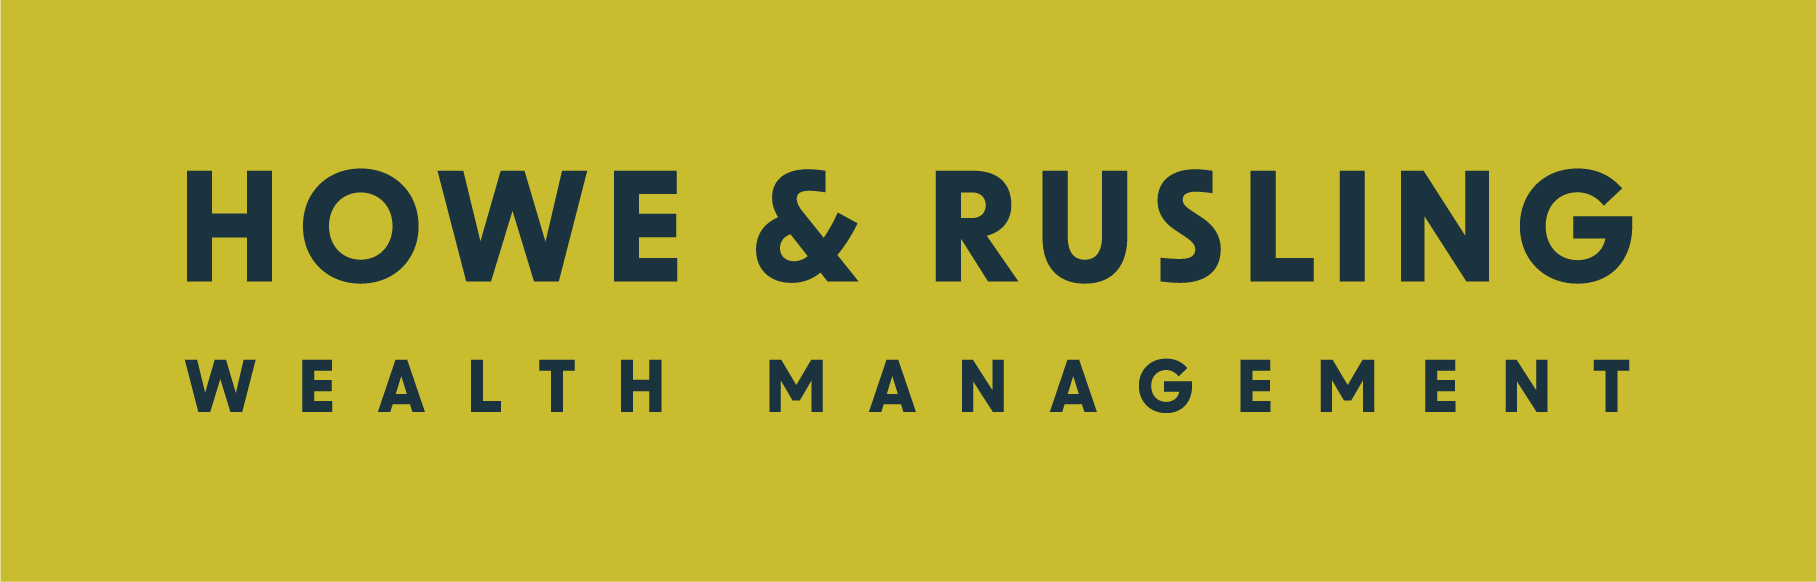 Howe & Rusling Wealth Management